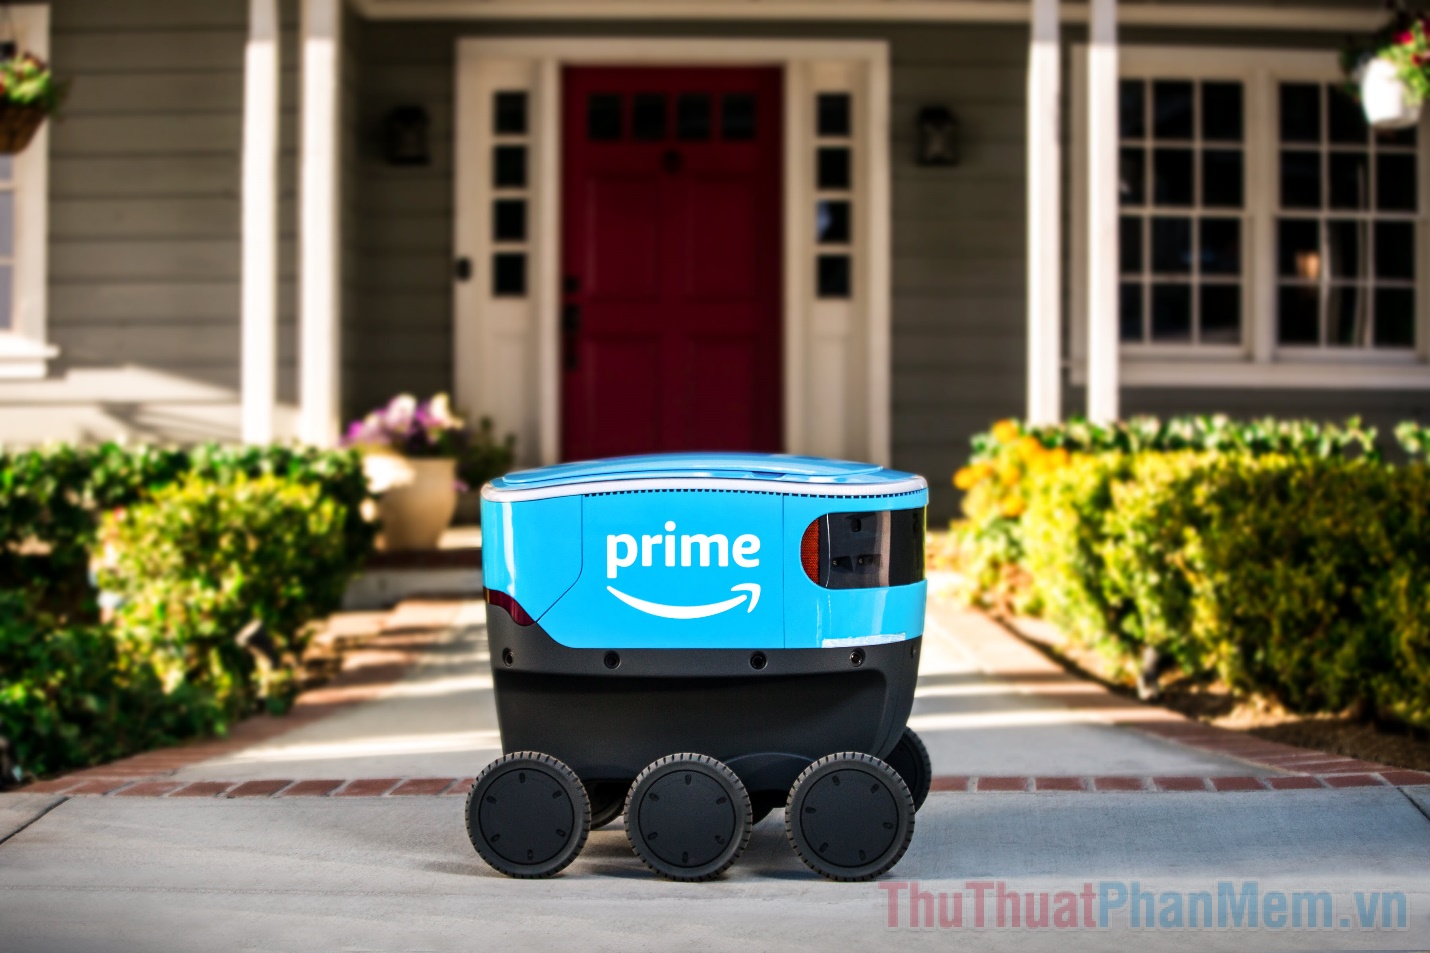 Amazon Scout là cái tên chính thức của robot giao hàng chuyên phục vụ cho các đơn hàng đến từ Amazon